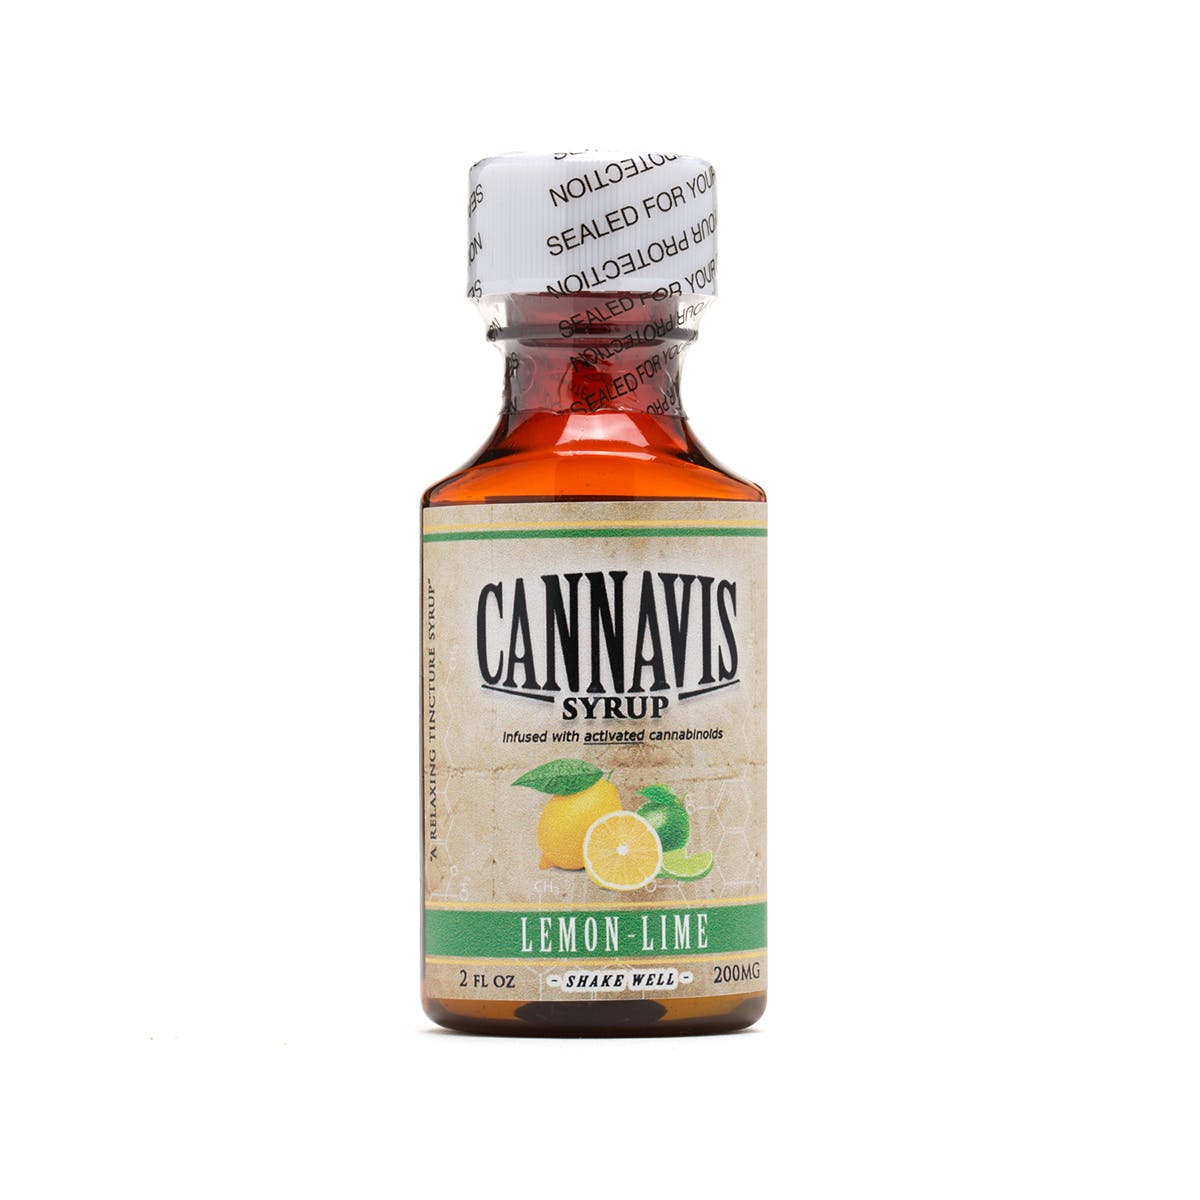 marijuana-dispensaries-treetop-la-in-los-angeles-cannavis-syrup-2c-lemon-lime-200mg